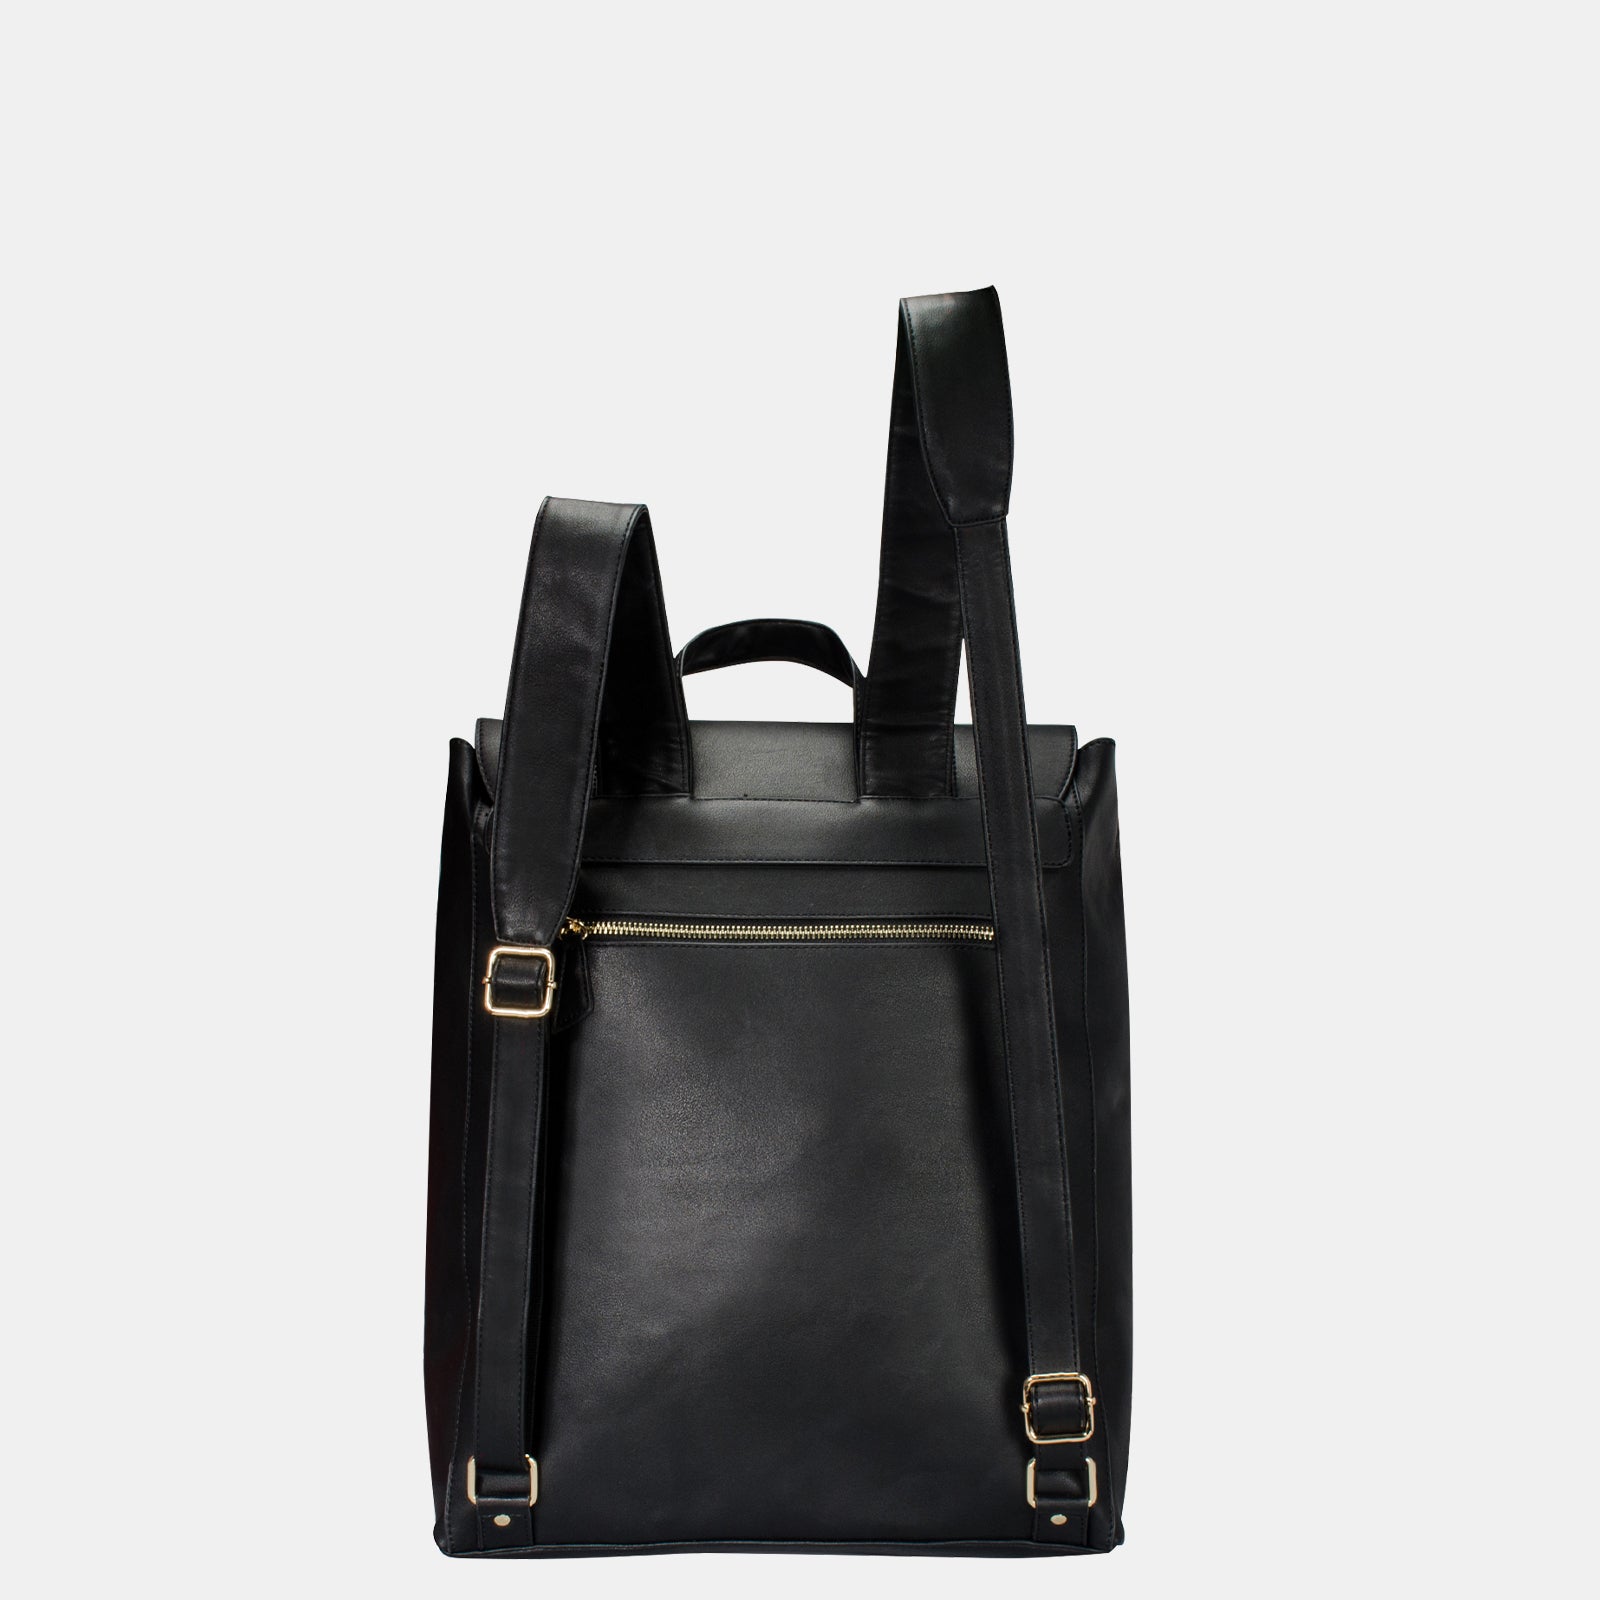 Estarer Women Leather 15.6 Inch Laptop Backpack College Bag Black